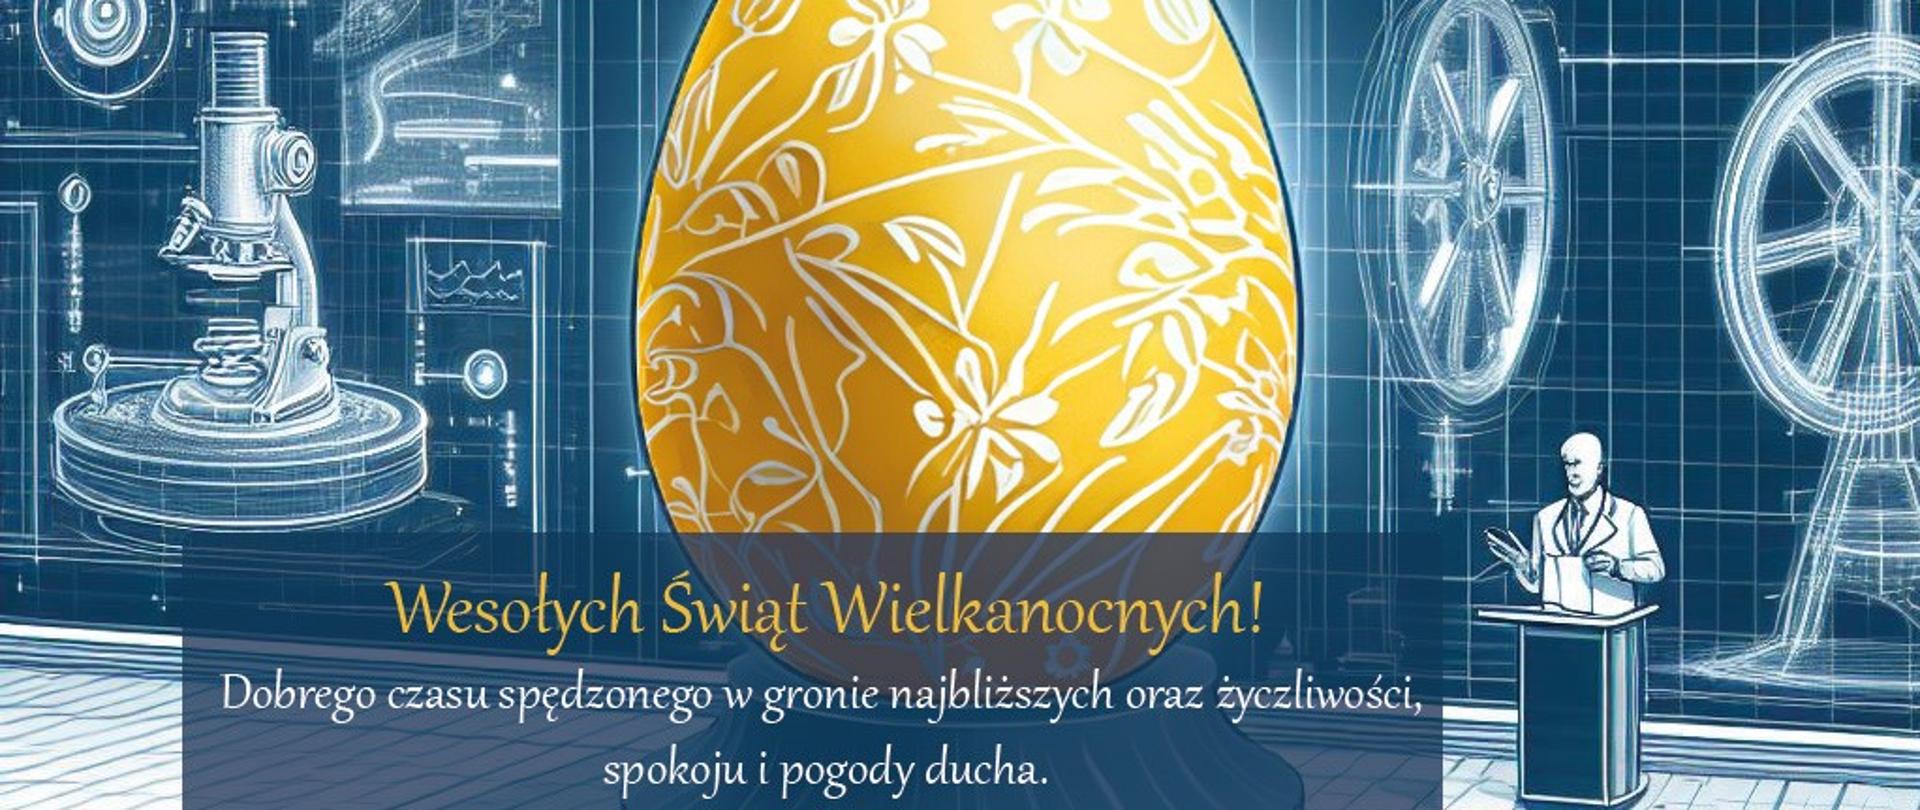 Grafika - obrazki przedstawiające różne urządzenia i przyrządy naukowe, przed tym żółte jajko i napis Wesołych Świąt Wielkanocnych.